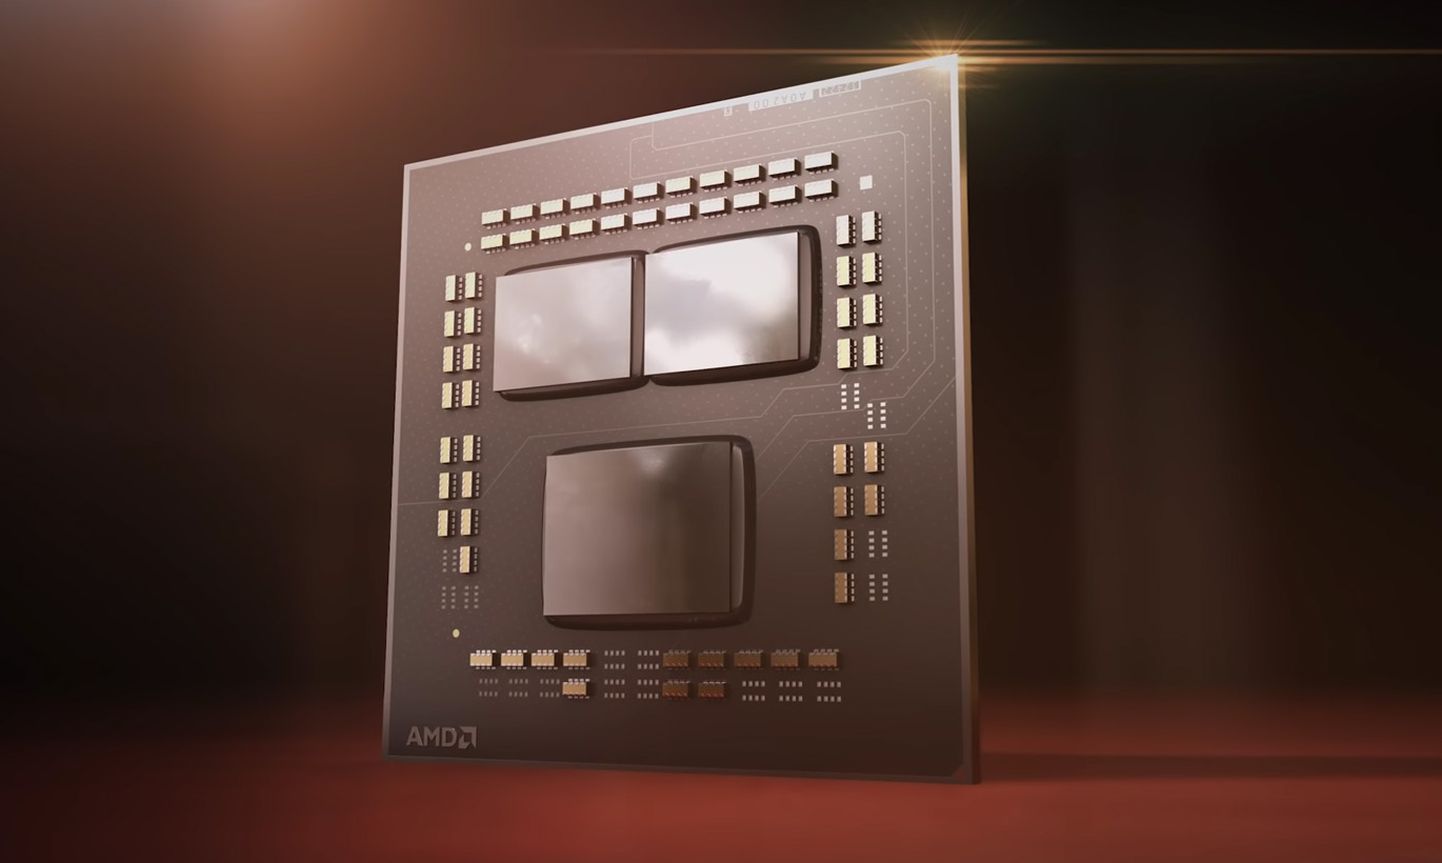 AMD Zen 2 mikroarhitektuurist alates kasutab firma ühel alusplaadil kolm pisikiipi - üks I/O ehk liidese kiip ning kaks arvutuskiipi. Kiipide suuruse ja arhitektuurse disaini tõttu on see odavaim viis toota võimsaid protsessoreid.